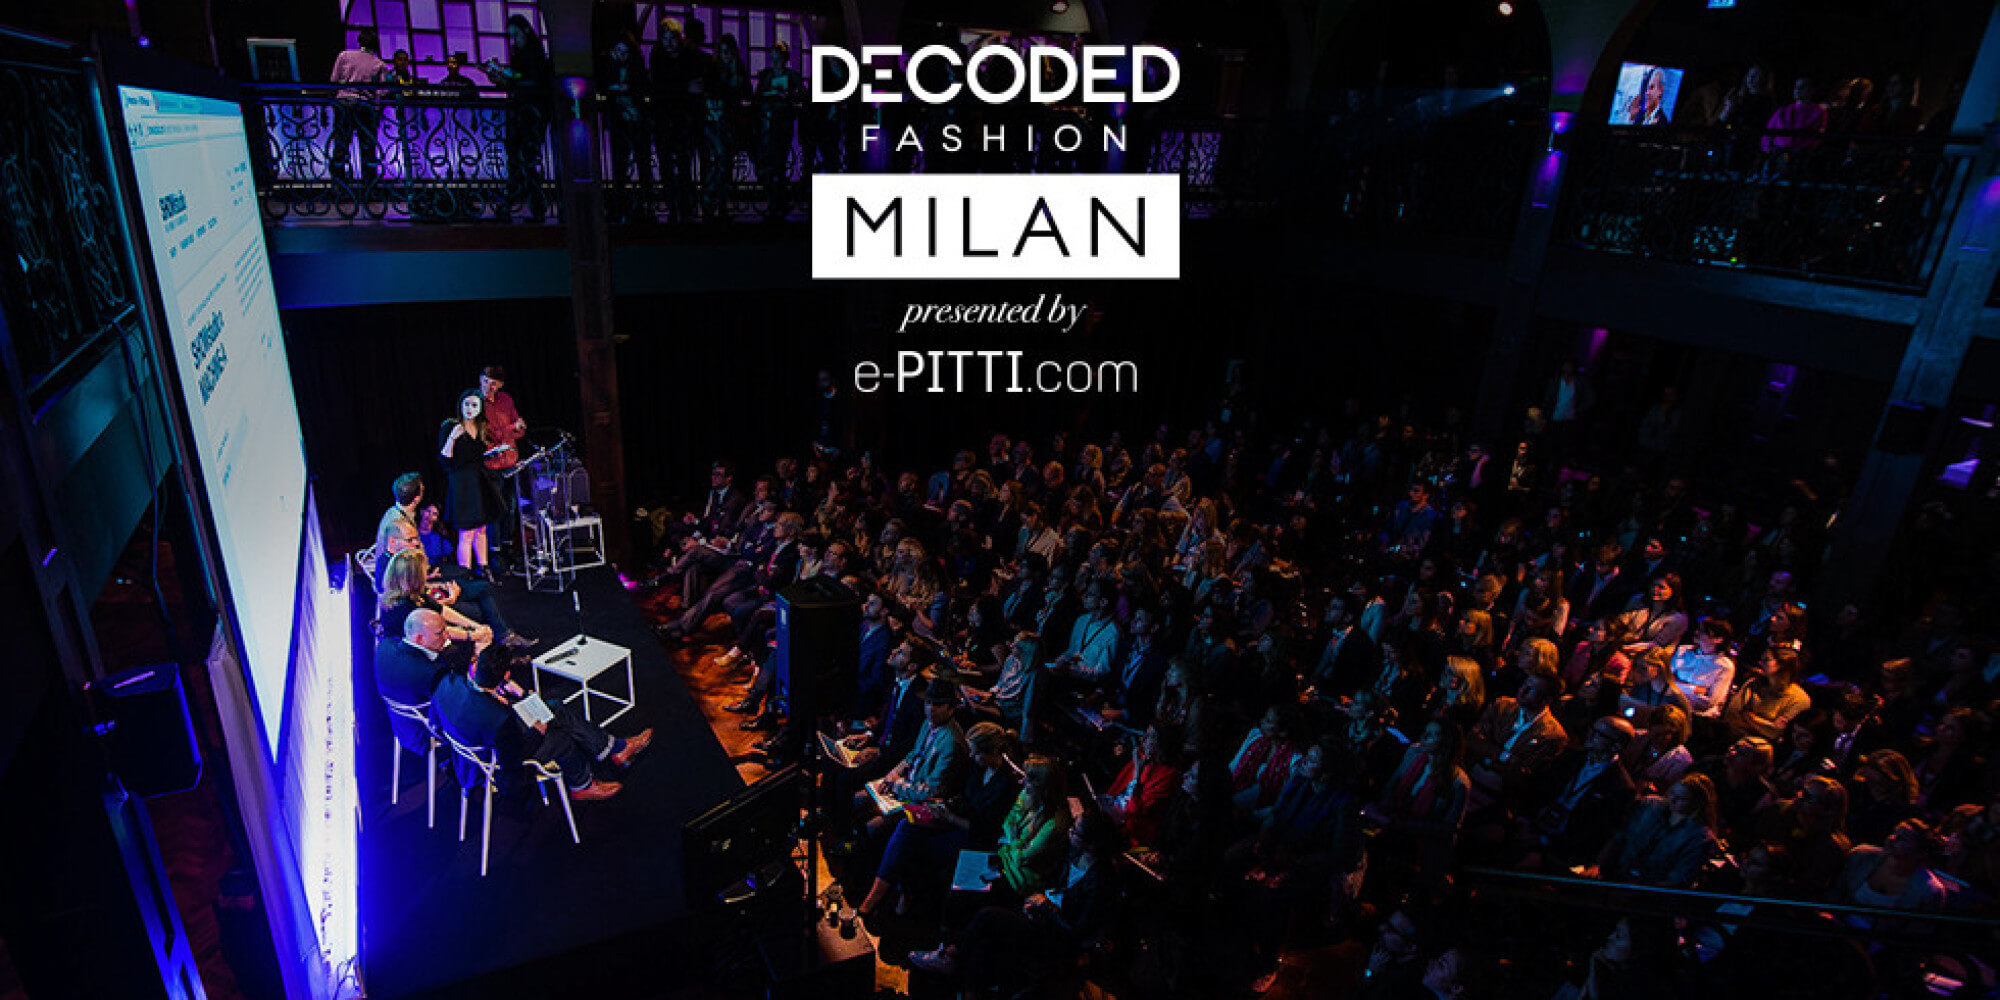 Decoded Fashion Milan ’16